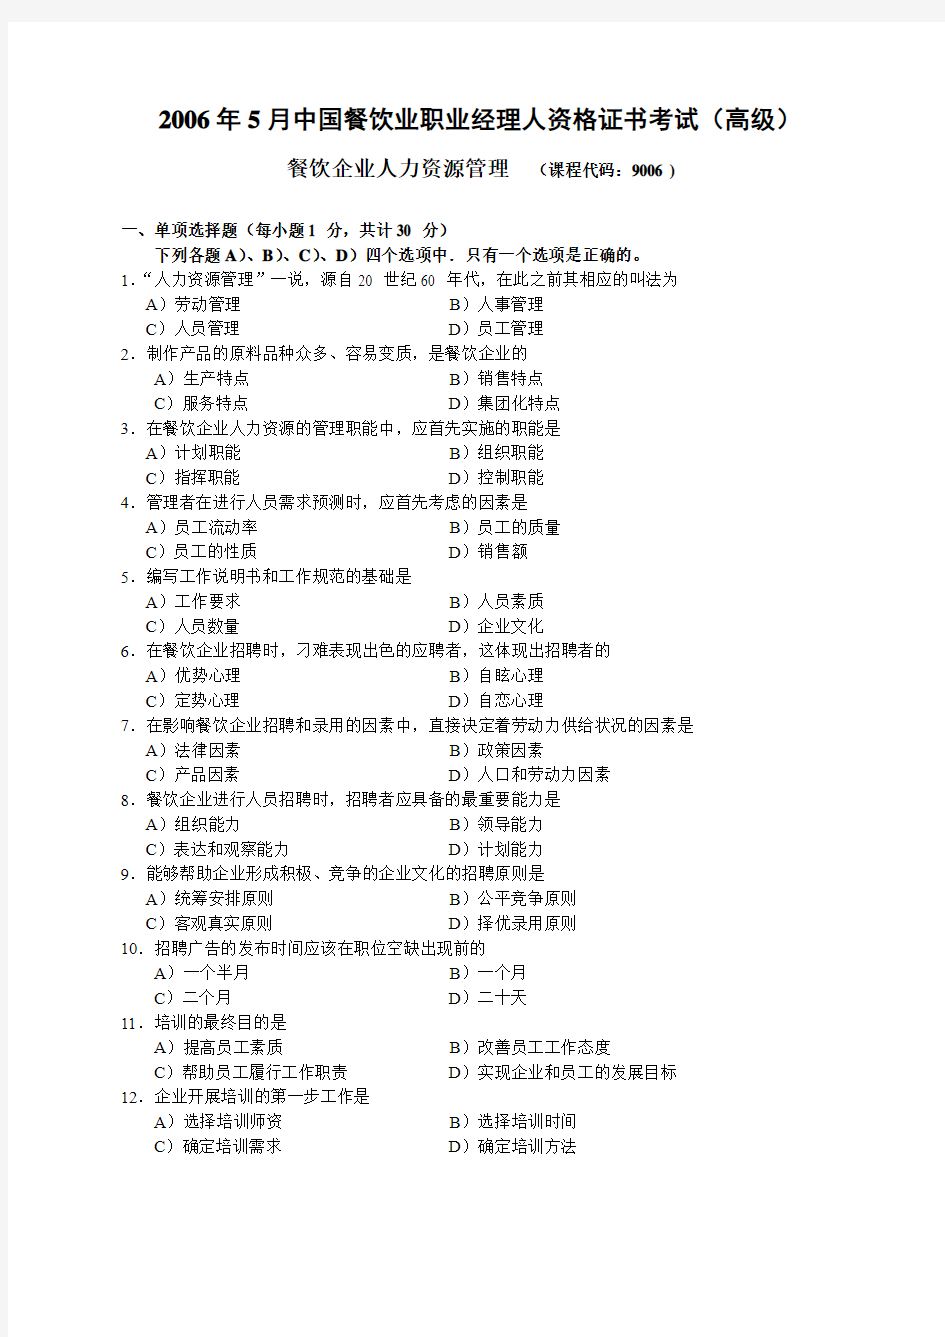 2006年5月中国餐饮业职业经理人资格证书考试(高级)餐饮企业人力资源管理试题